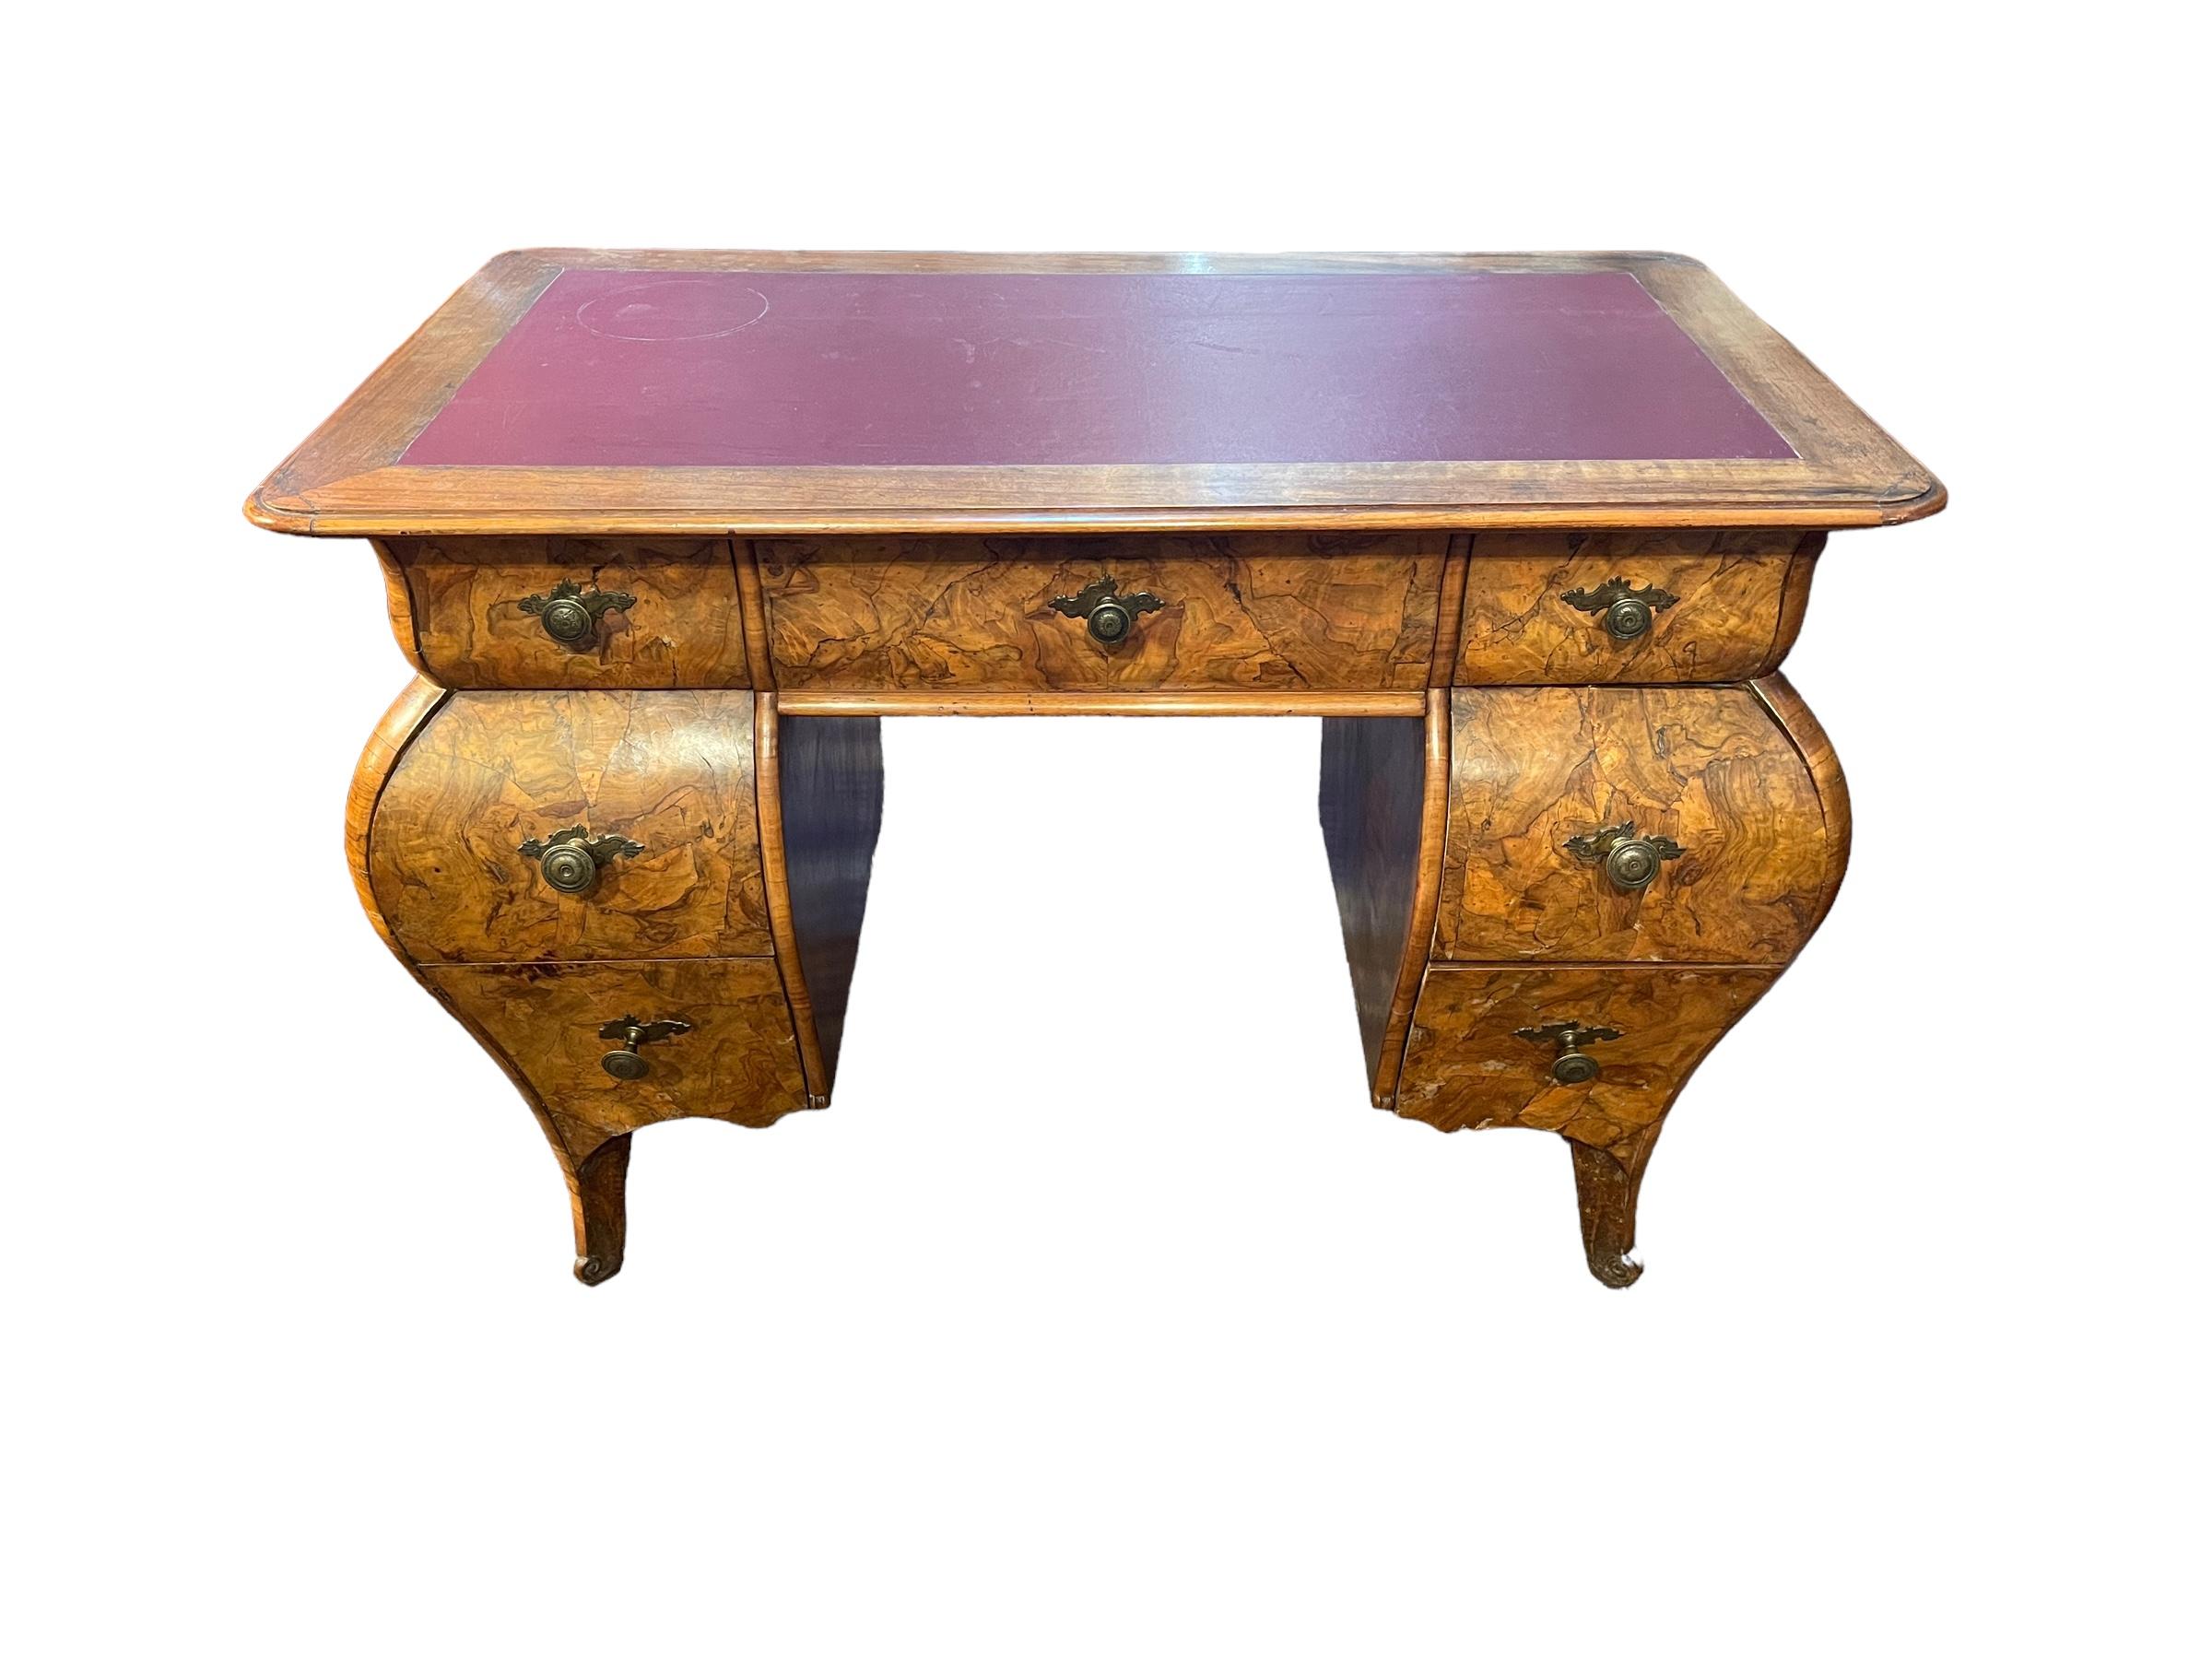 Schreibtisch mit sieben Schubladen, furniert in Nussbaum, lombardischer Barock, 19. Jahrhundert, auf der Vorderseite bewegt, an den Seiten und auf der Rückseite fertig. 

Einige Restaurierungsarbeiten wurden durchgeführt

Ausgezeichneter Zustand,